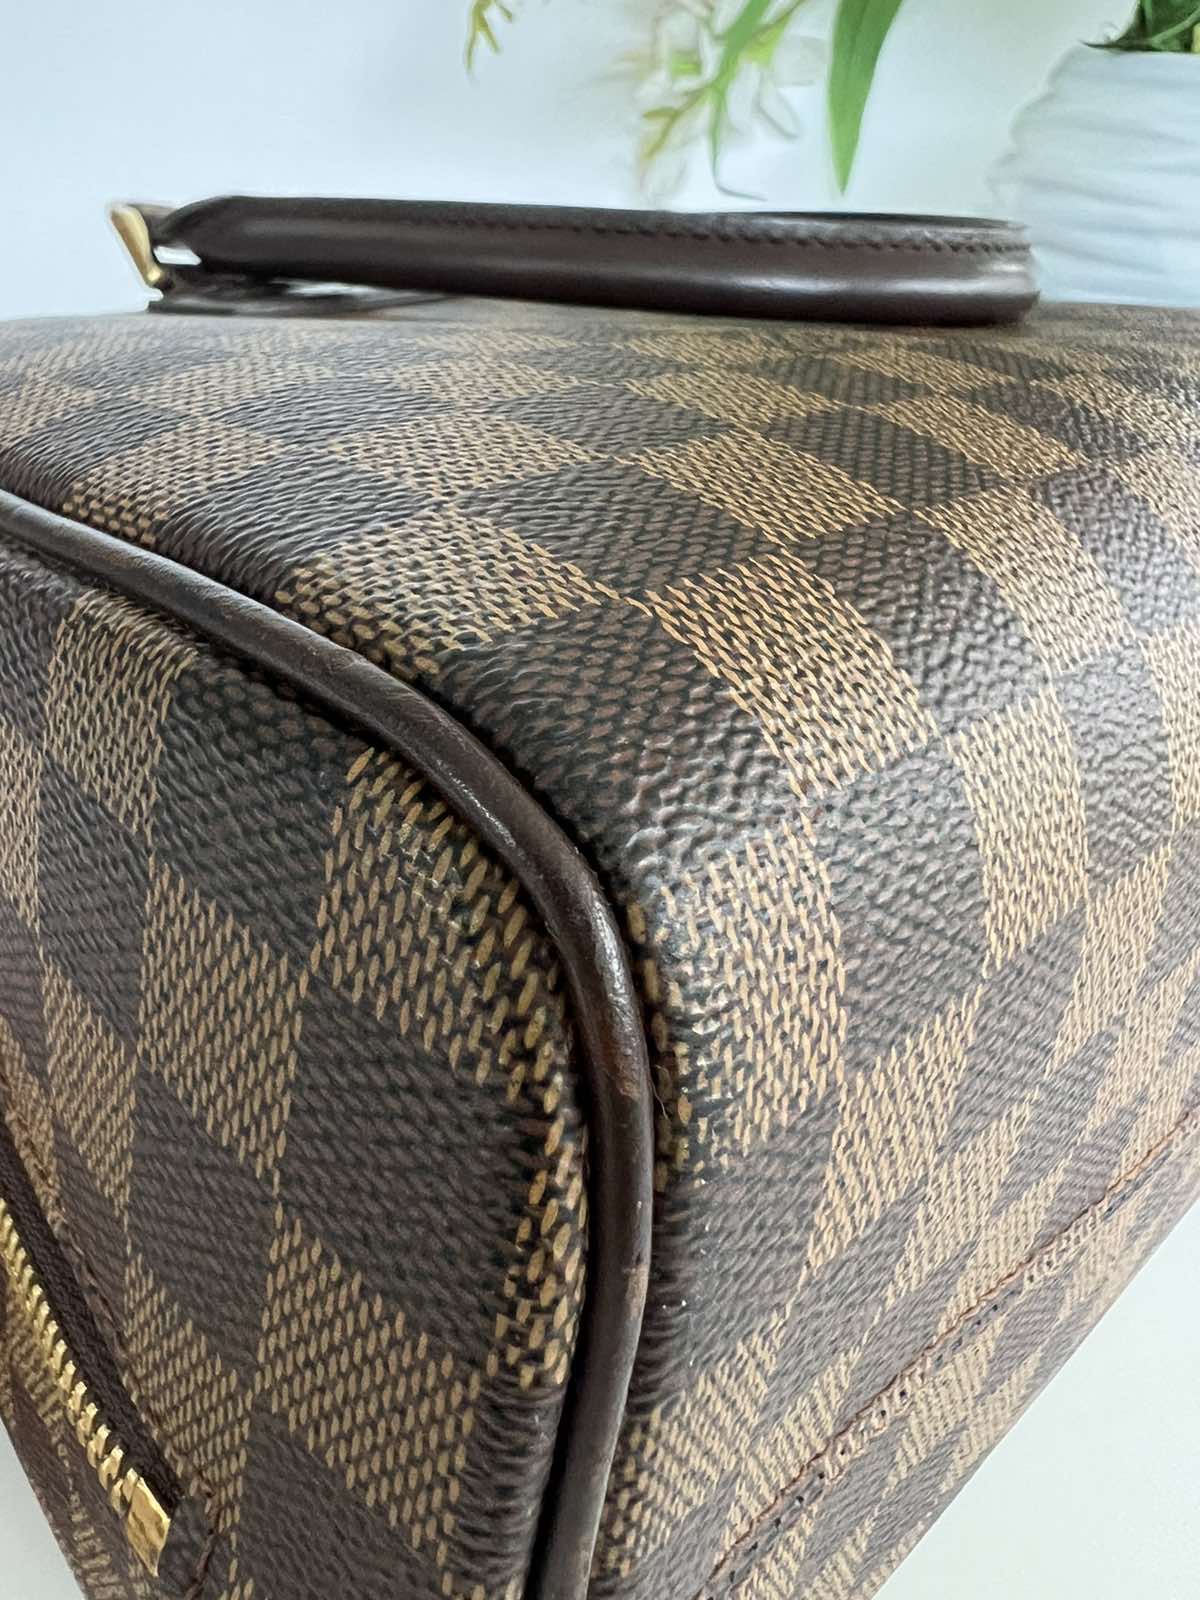 Louis Vuitton Damier Ebene Nolita Handbag. DC: SP0084. Made in